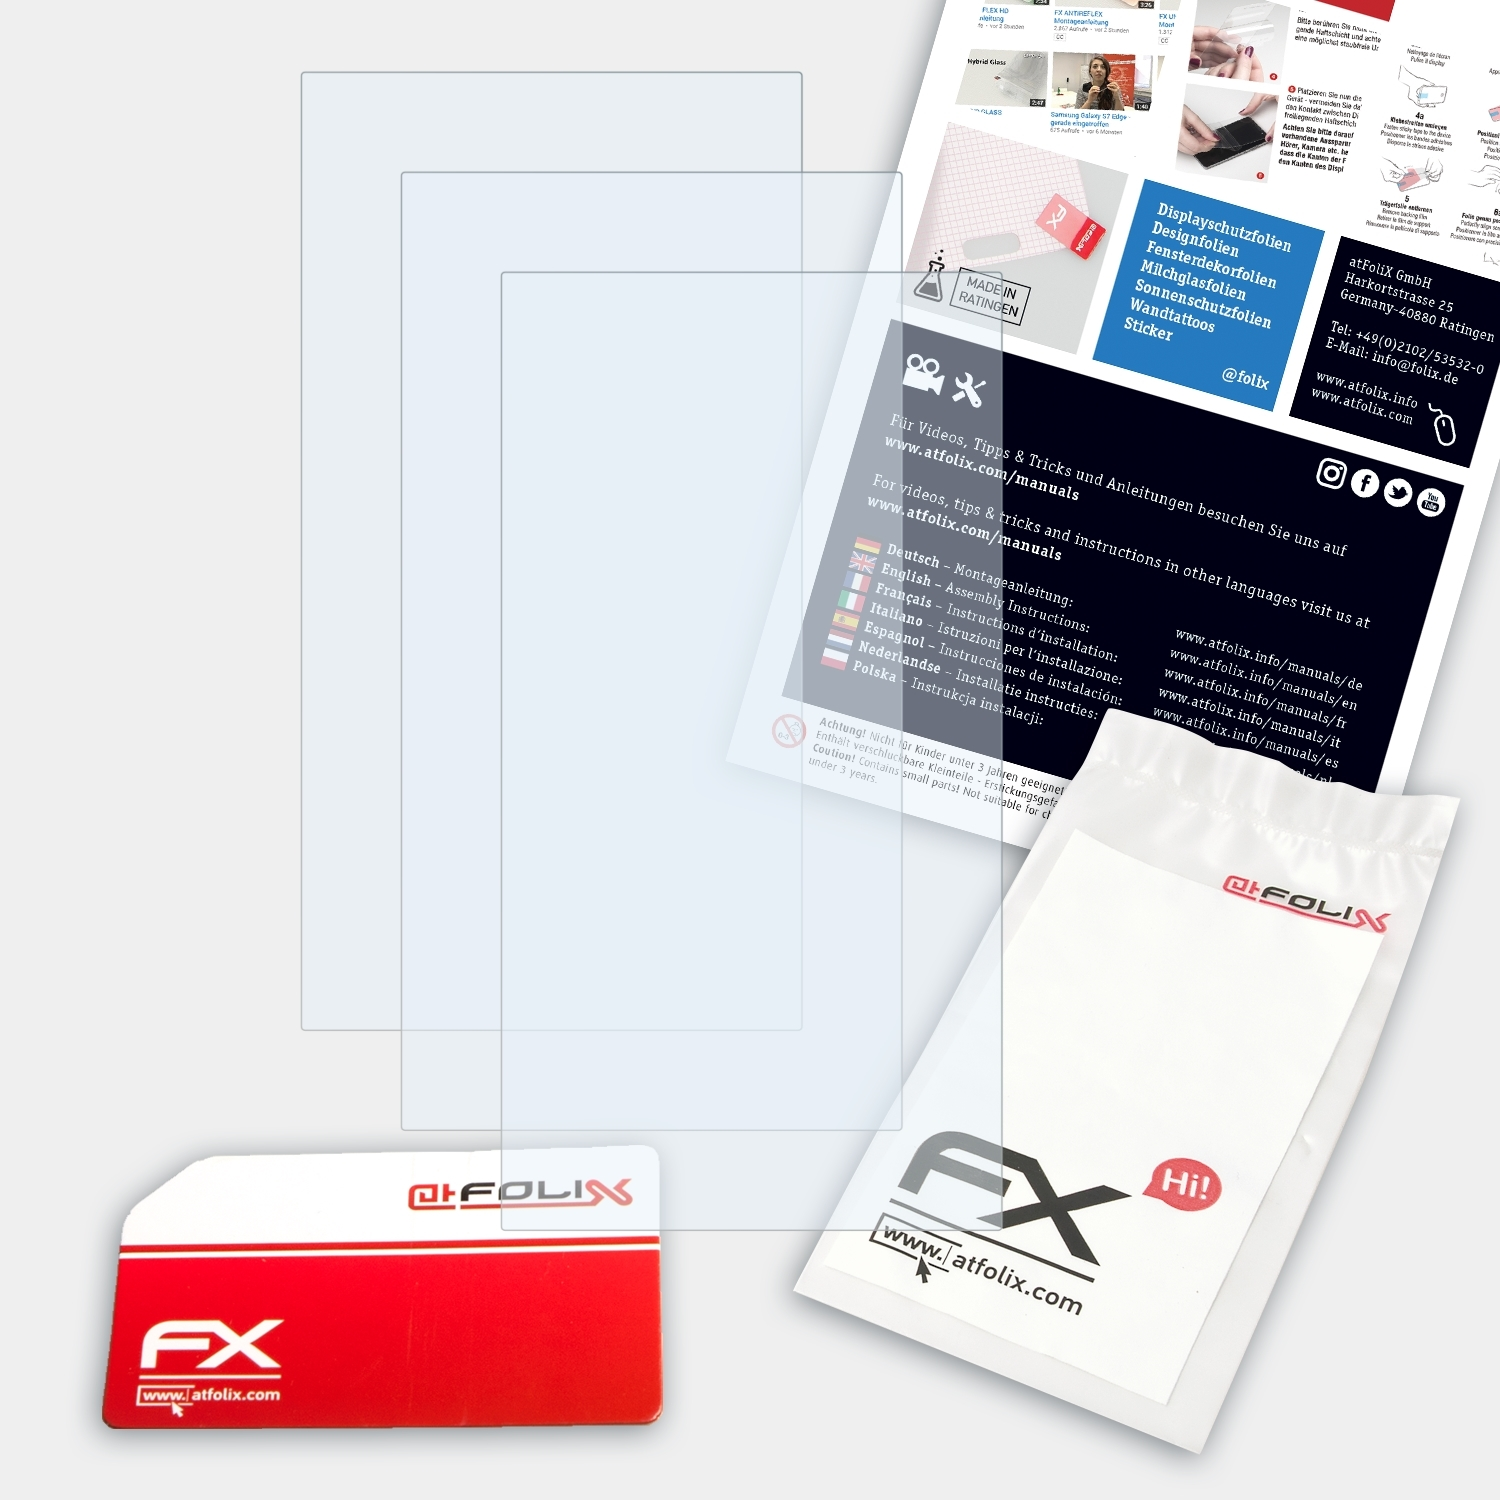 ATFOLIX 3x FX-Clear 7 Axon Mini) ZTE Displayschutz(für